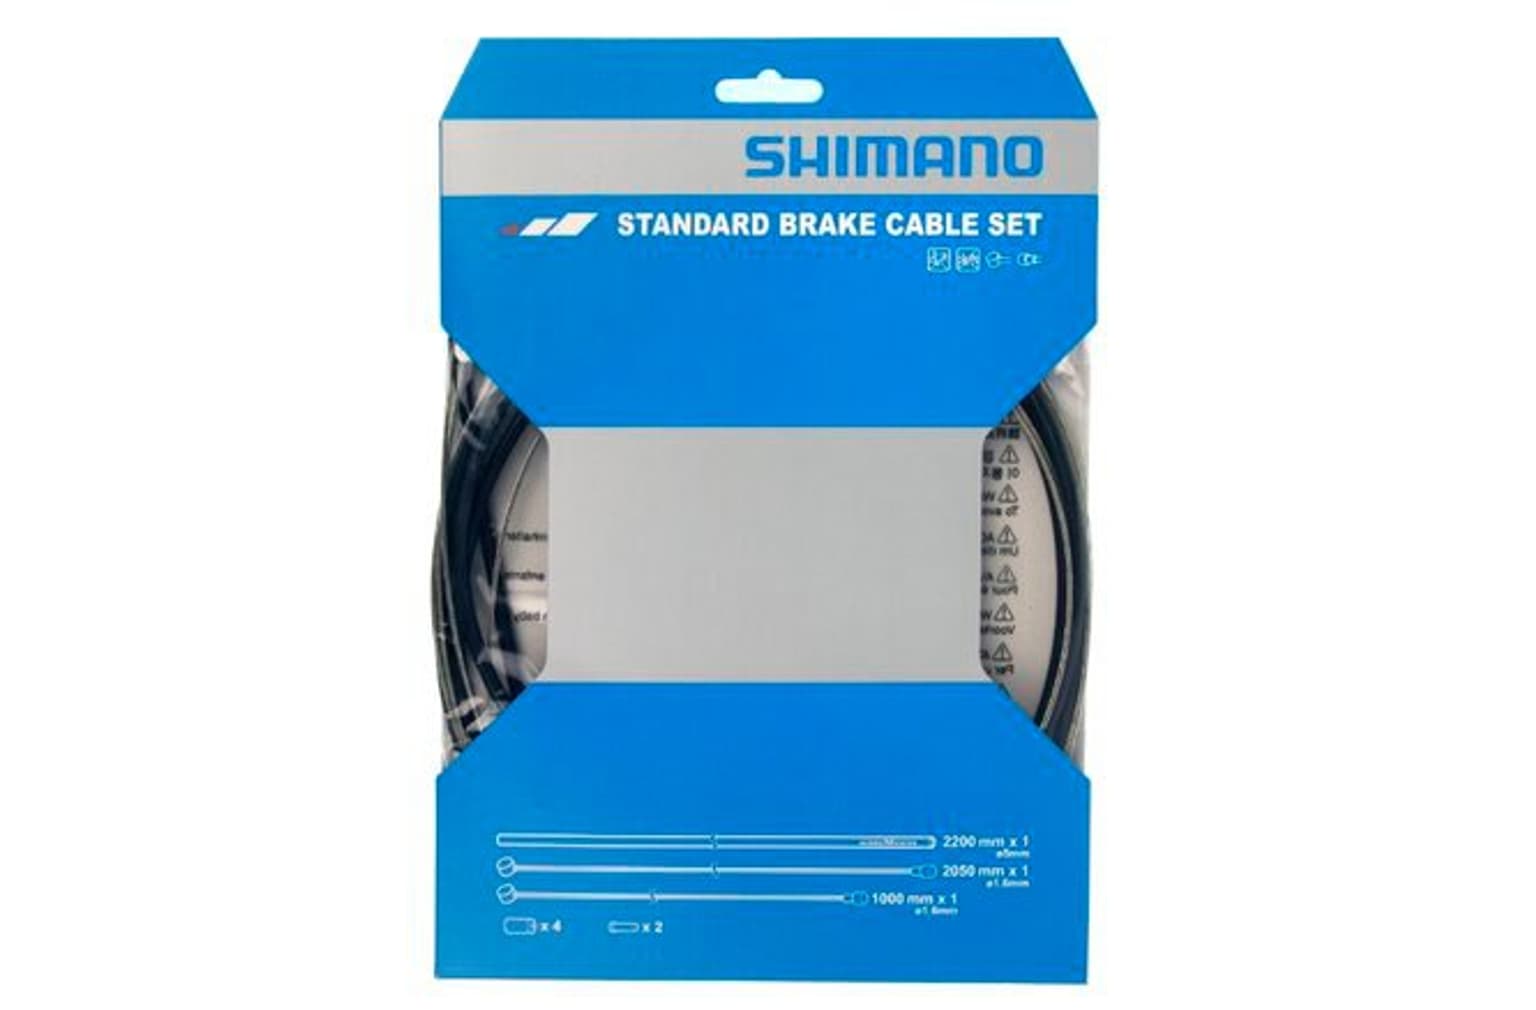 Shimano Shimano Bremszug-Set Standard Bremskabel 1